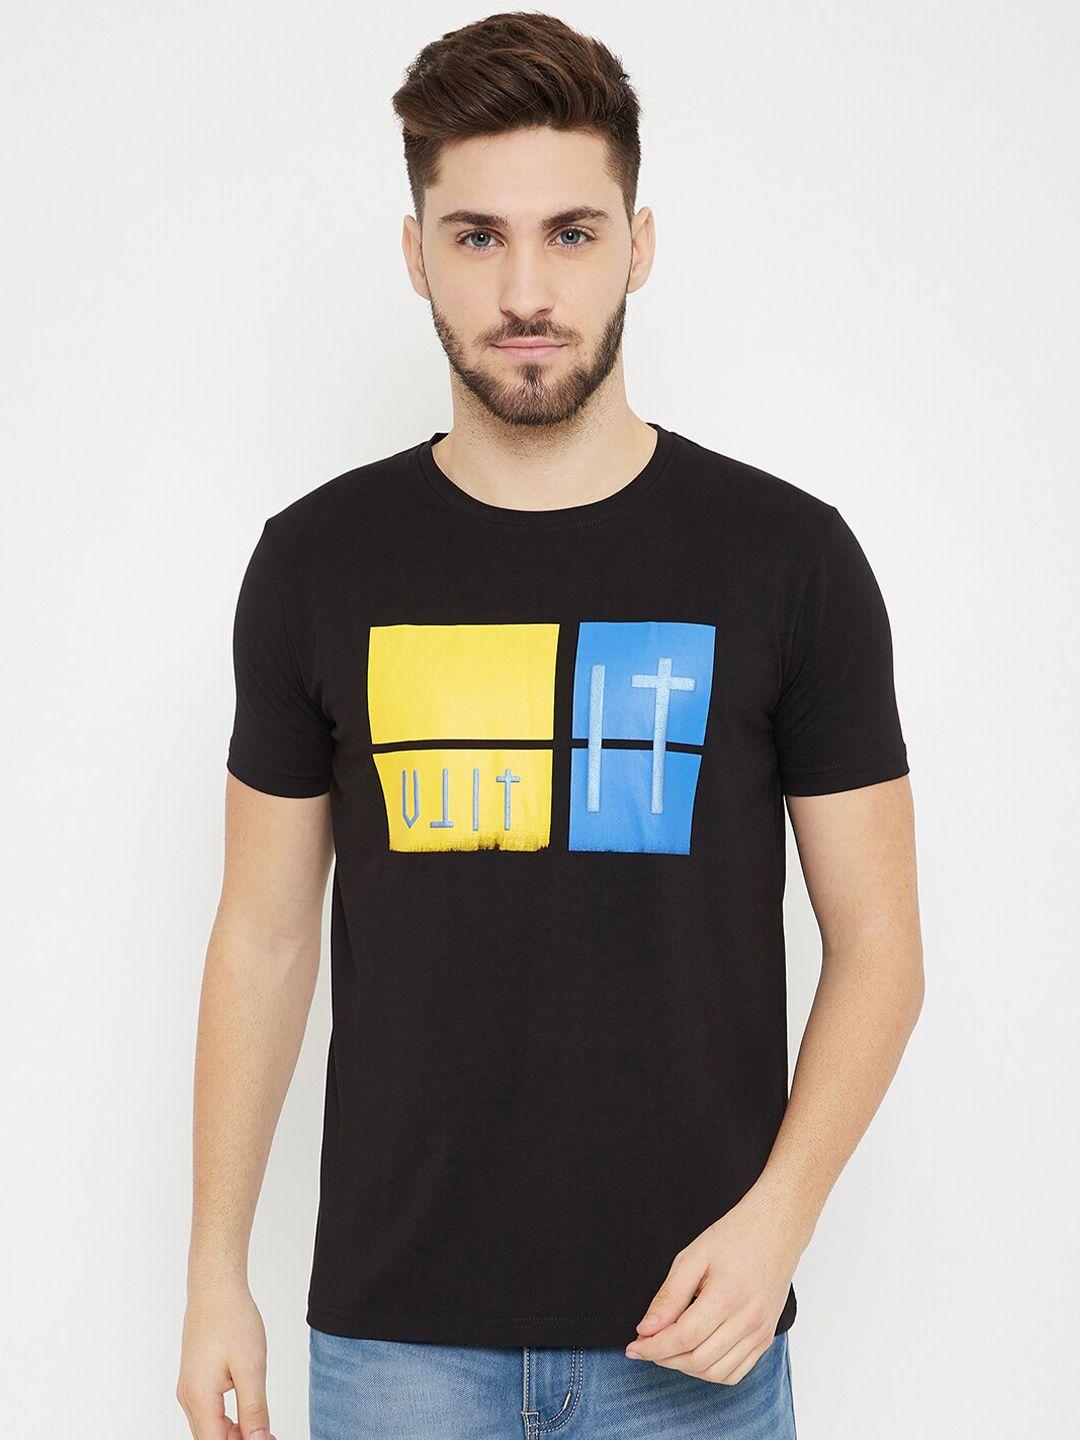 bishop-cotton-men-black-typography-printed-t-shirt